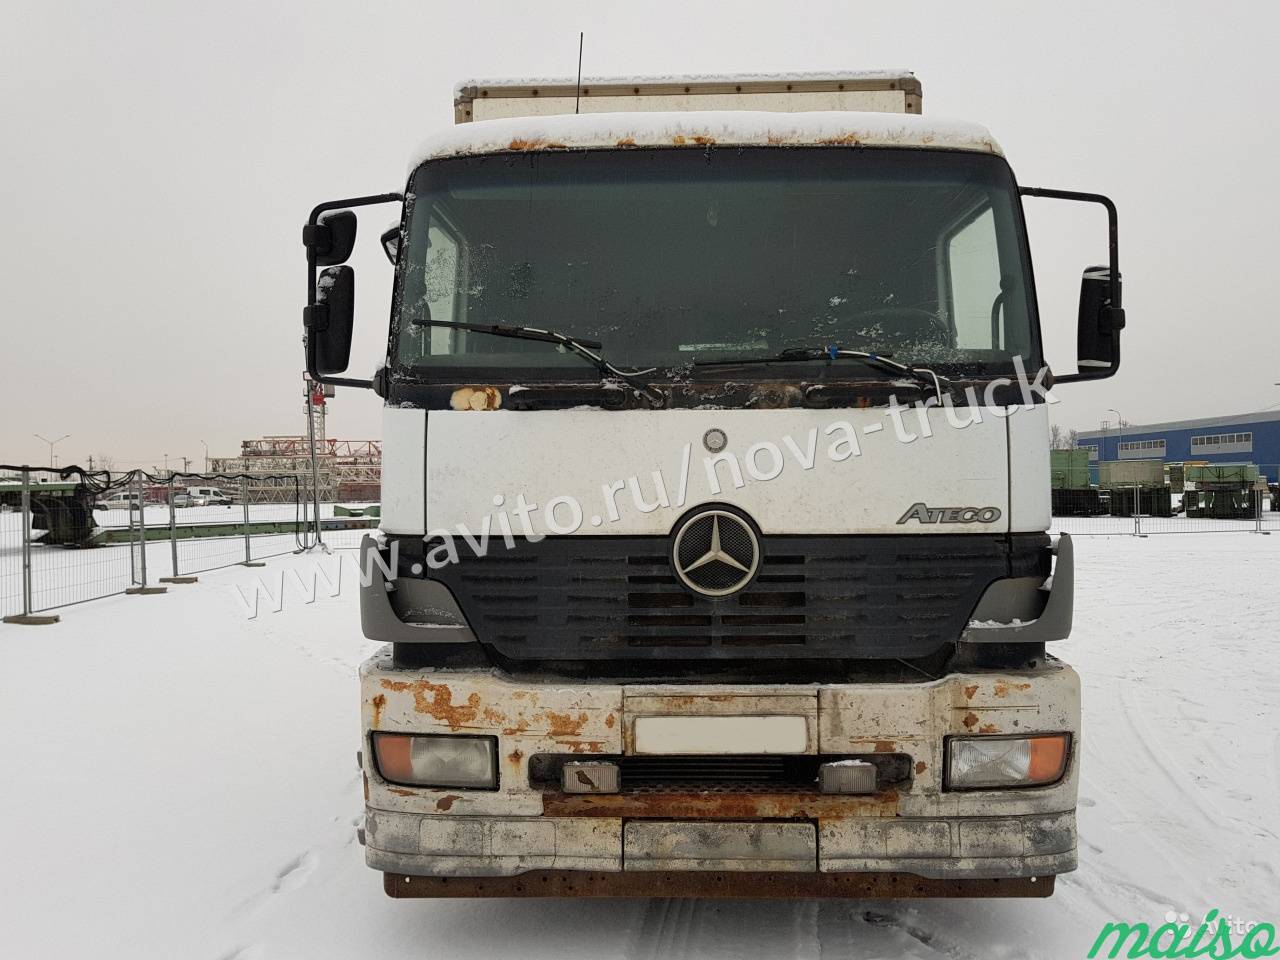 Промтоварный грузовик Mercedes Atego 2528, 2004 г в Санкт-Петербурге. Фото 2